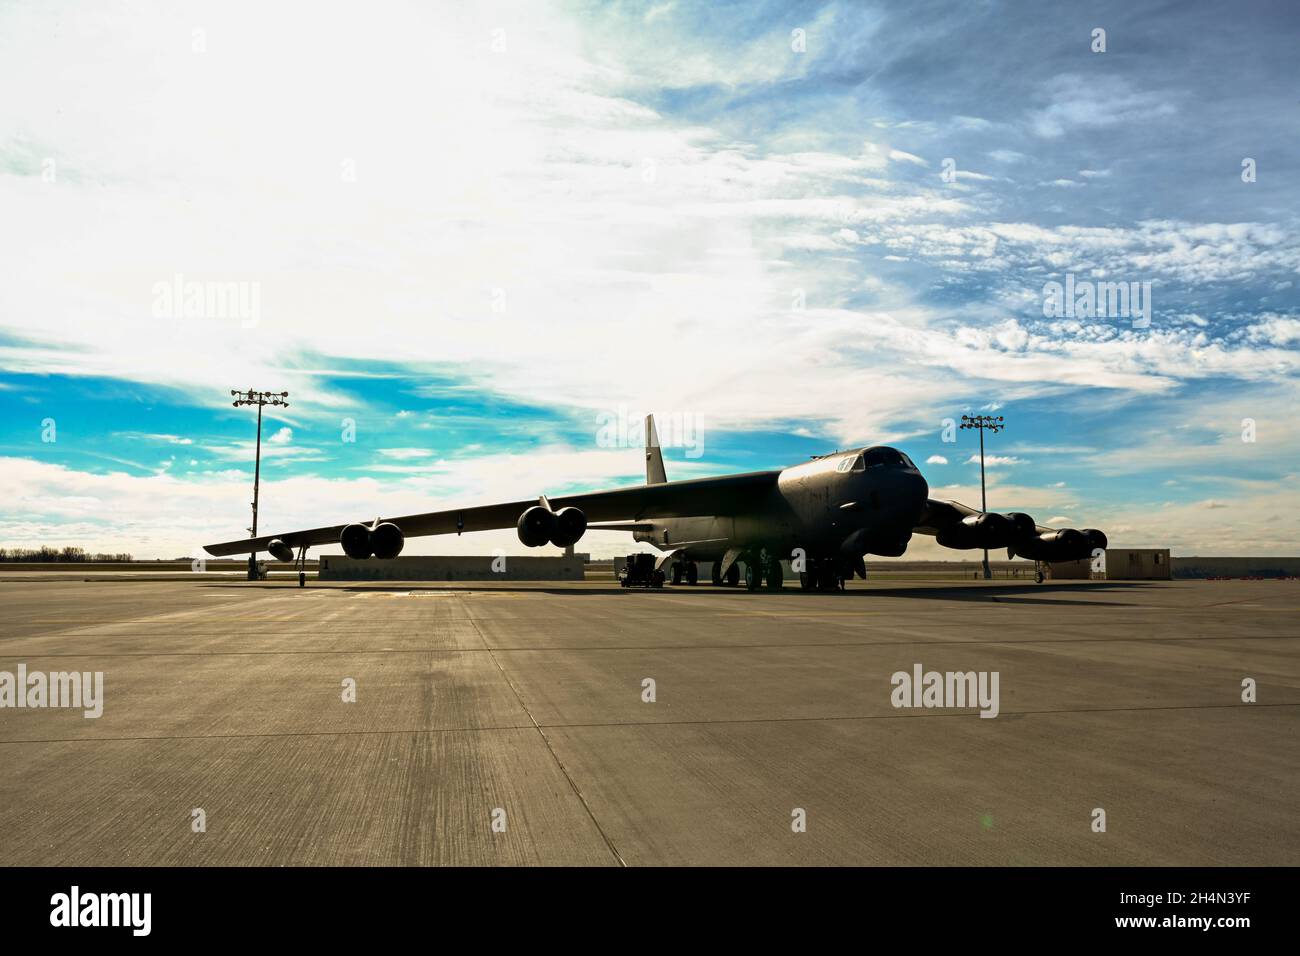 Una B-52H Stratofortress passa attraverso la sua ispezione pre-volo alla base militare Minot Air Force base, N.D., 25 ottobre 2021. Il B-52 è in grado di volare a velocità subsoniche elevate ad altitudini fino a 50,00 metri. (STATI UNITI Air Force foto di Airman 1st Class Zachary Wright) Foto Stock